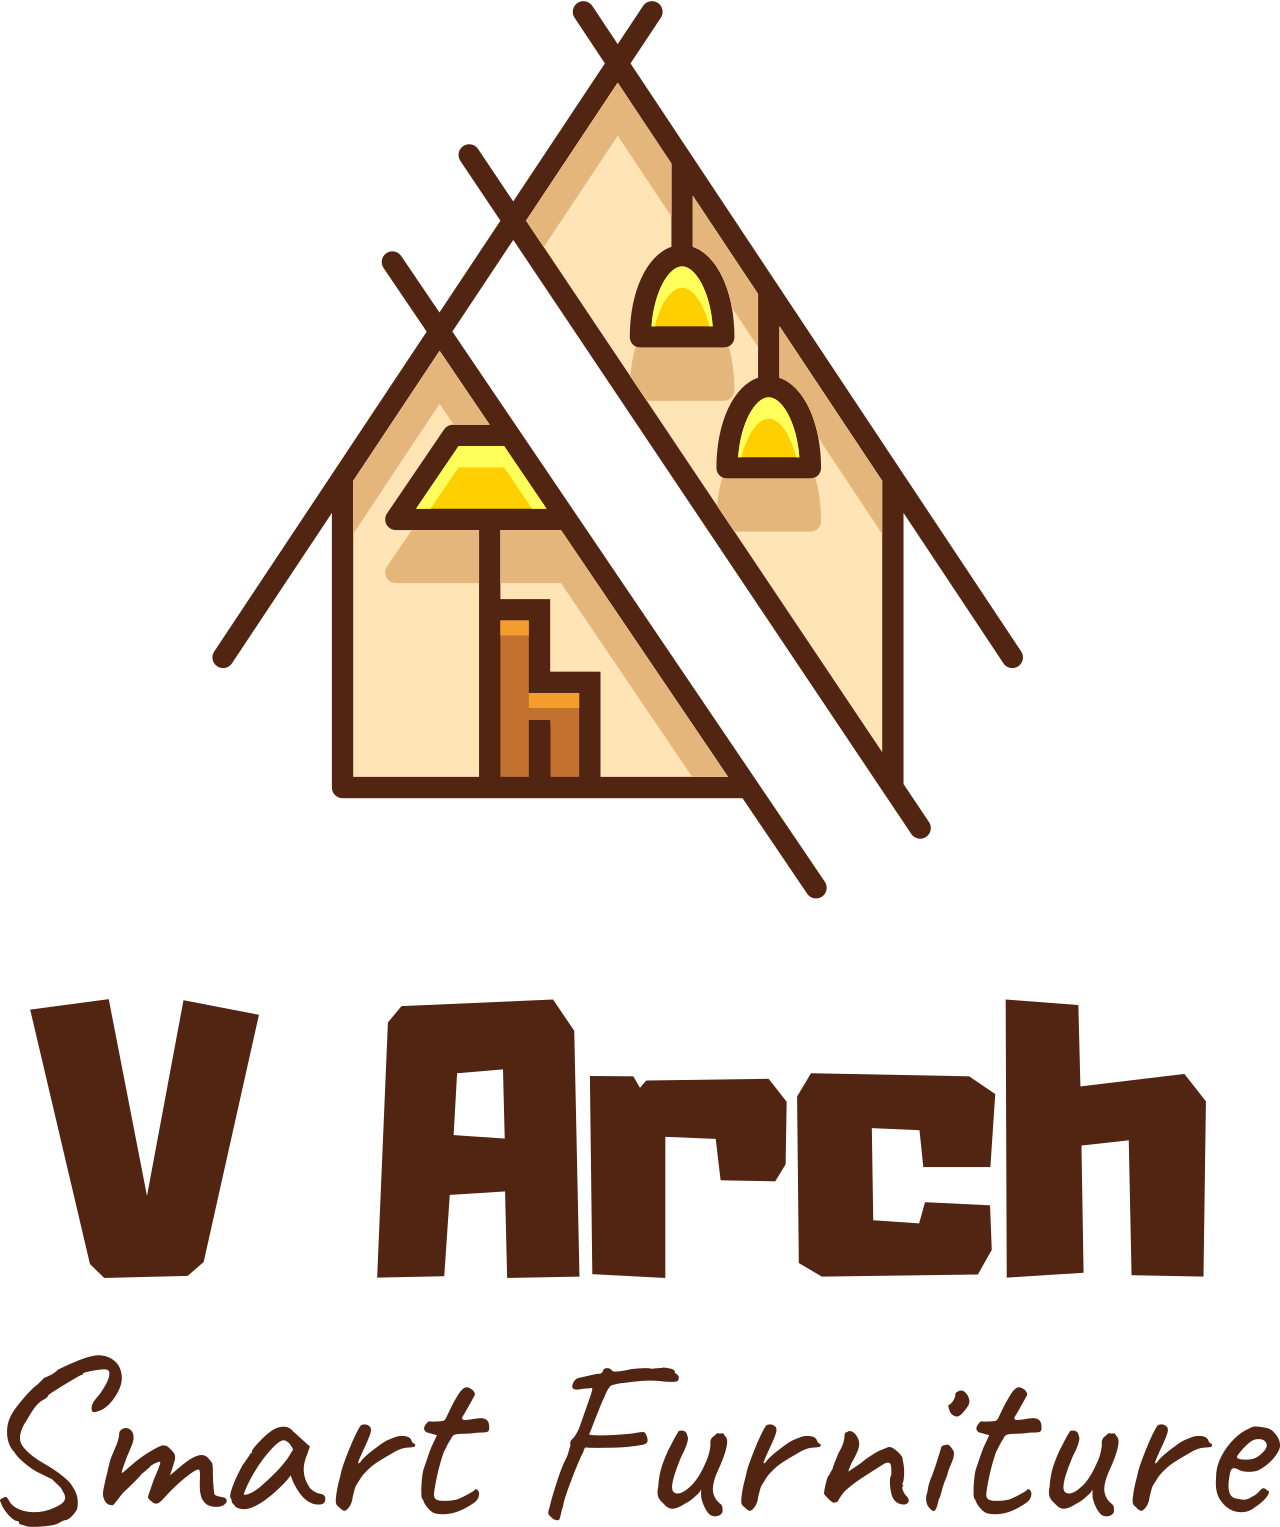 V Arch's web page